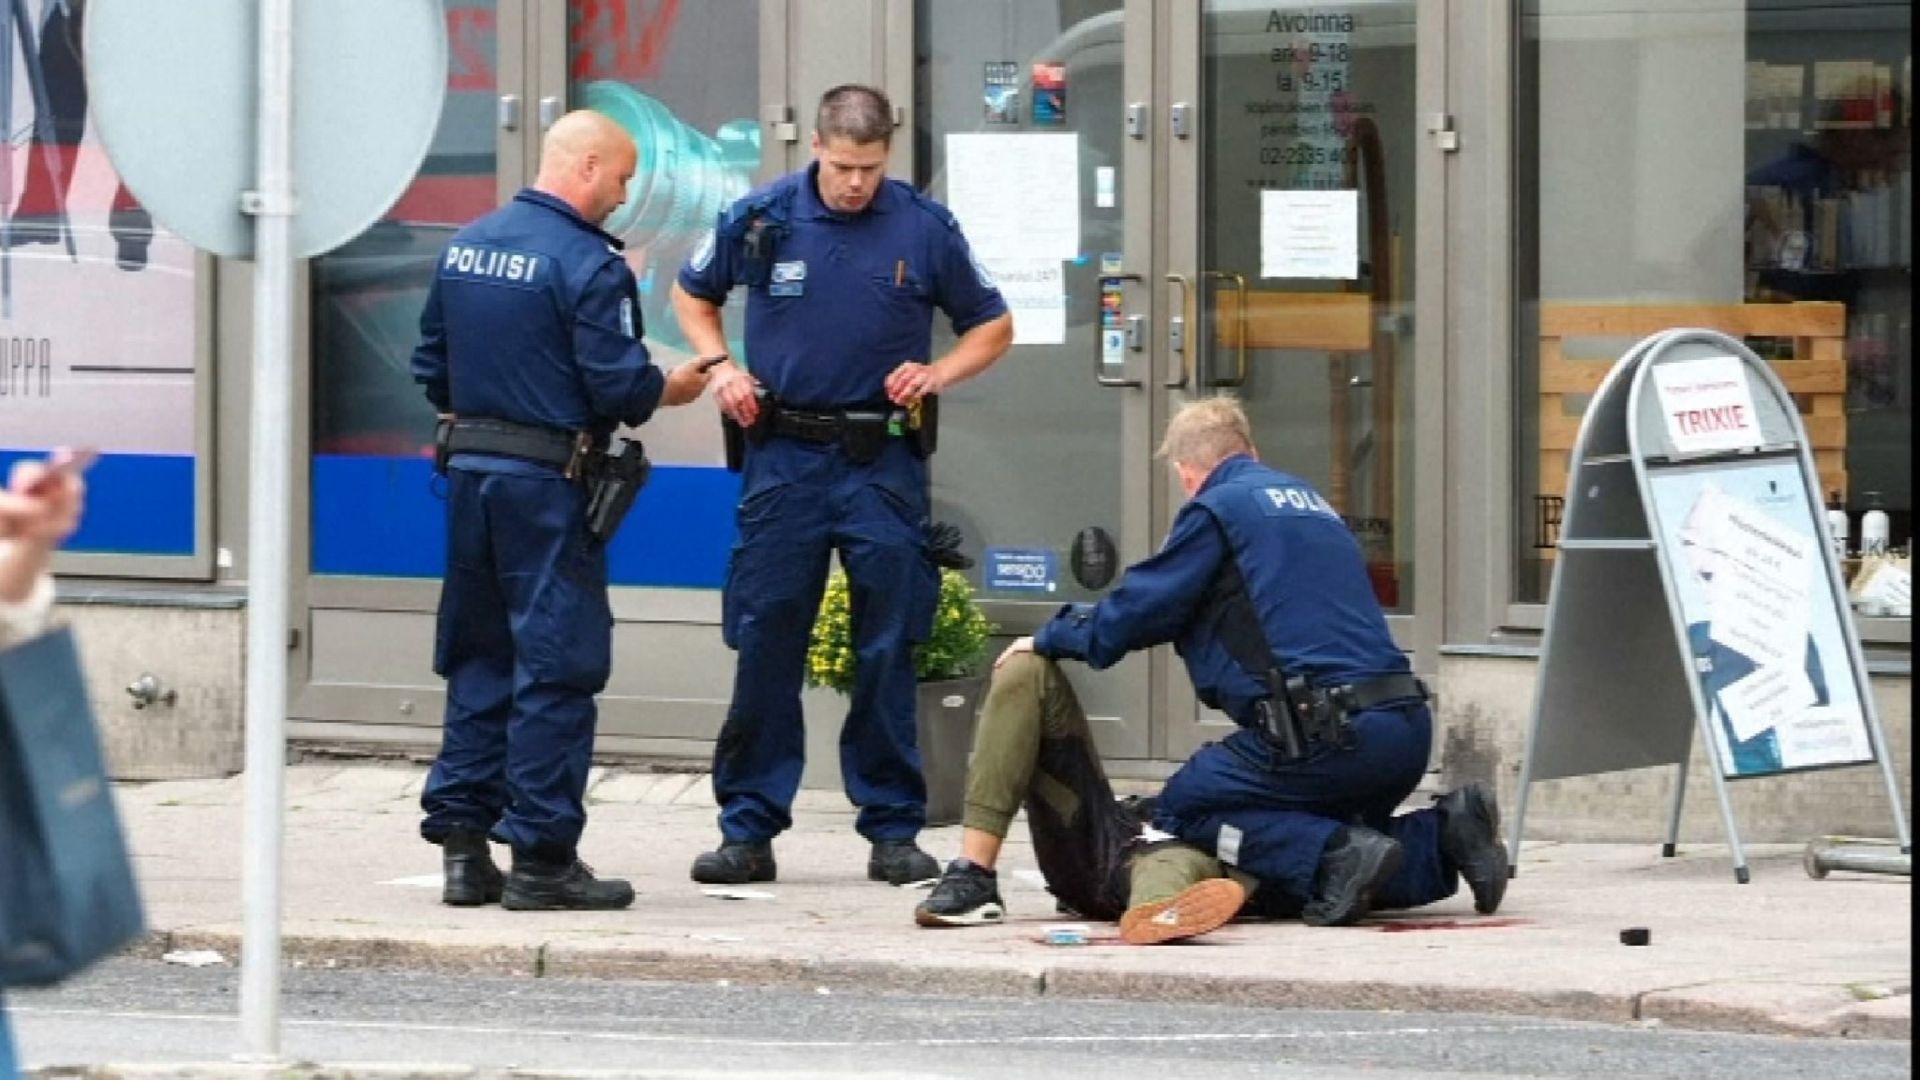  جوان مراکشی مظنون اصلی حمله تروریستی فنلاند معرفی شد